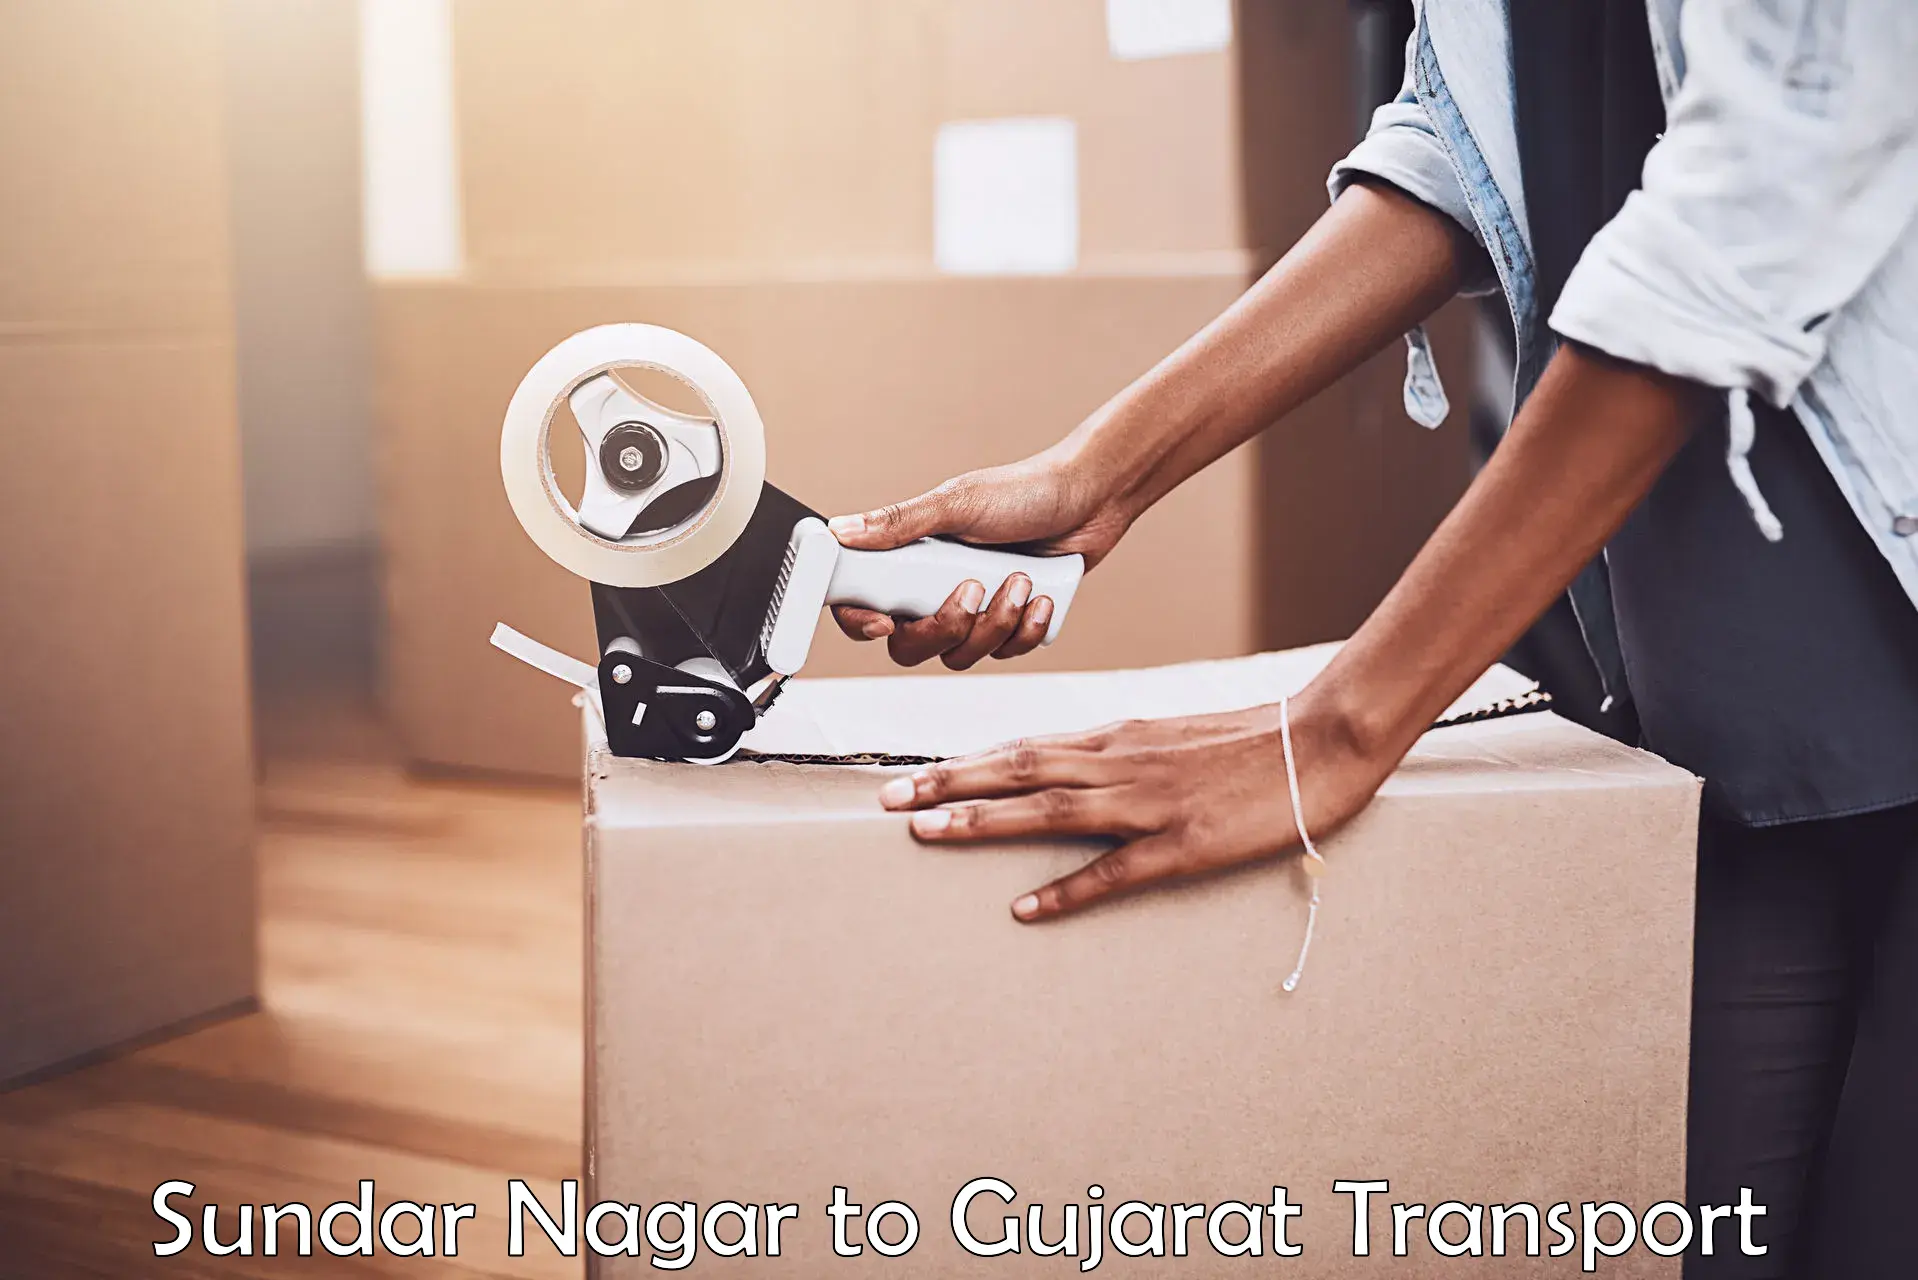 Interstate transport services Sundar Nagar to Tarapur